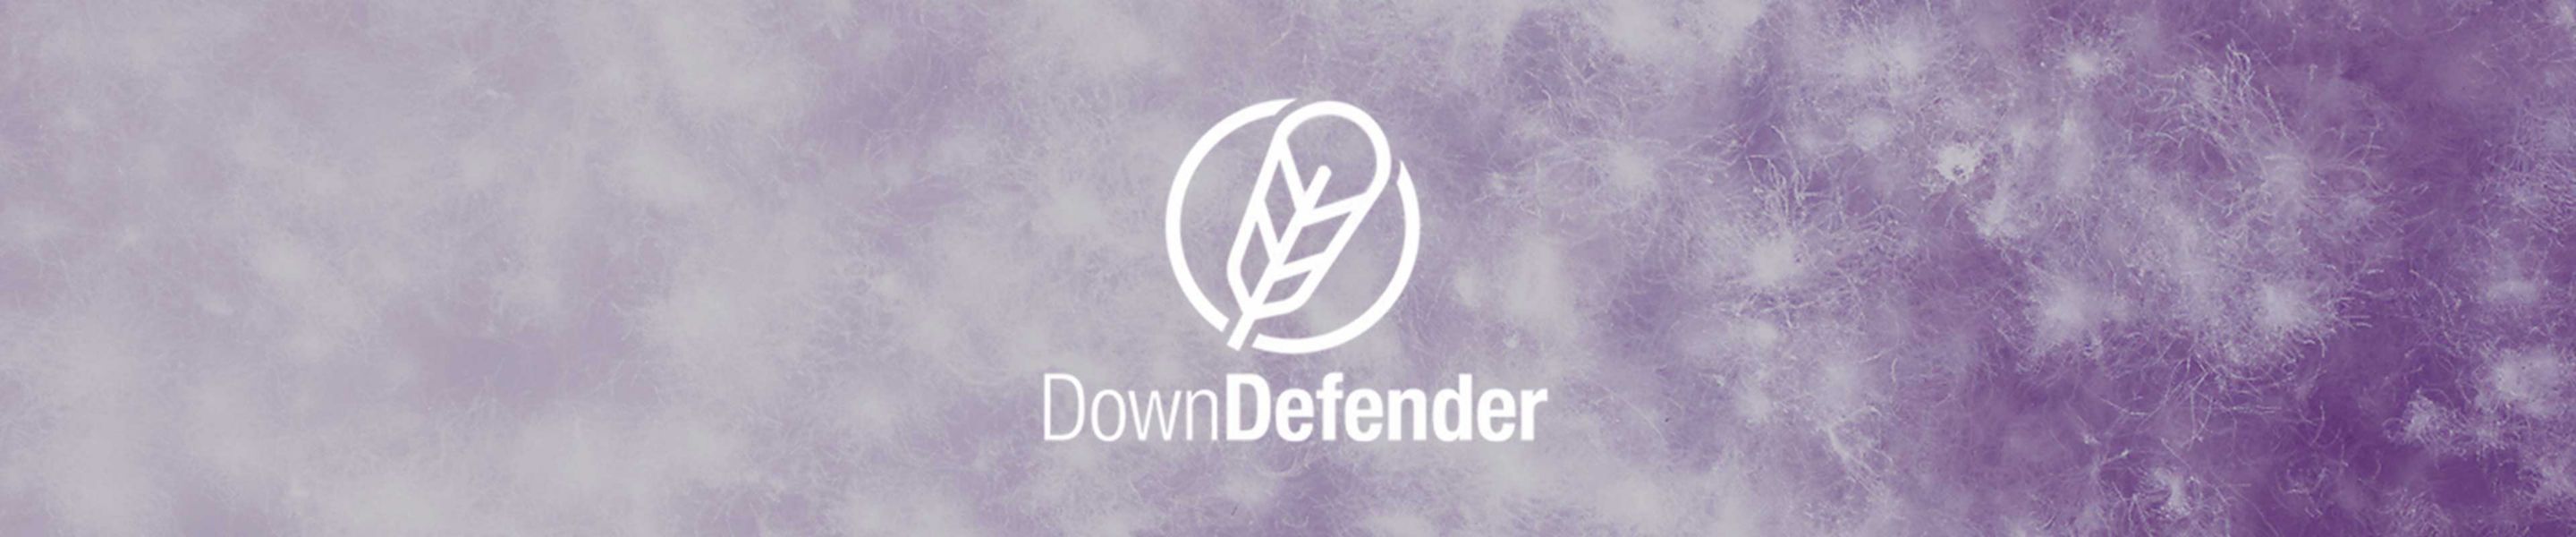 Down Defender logo